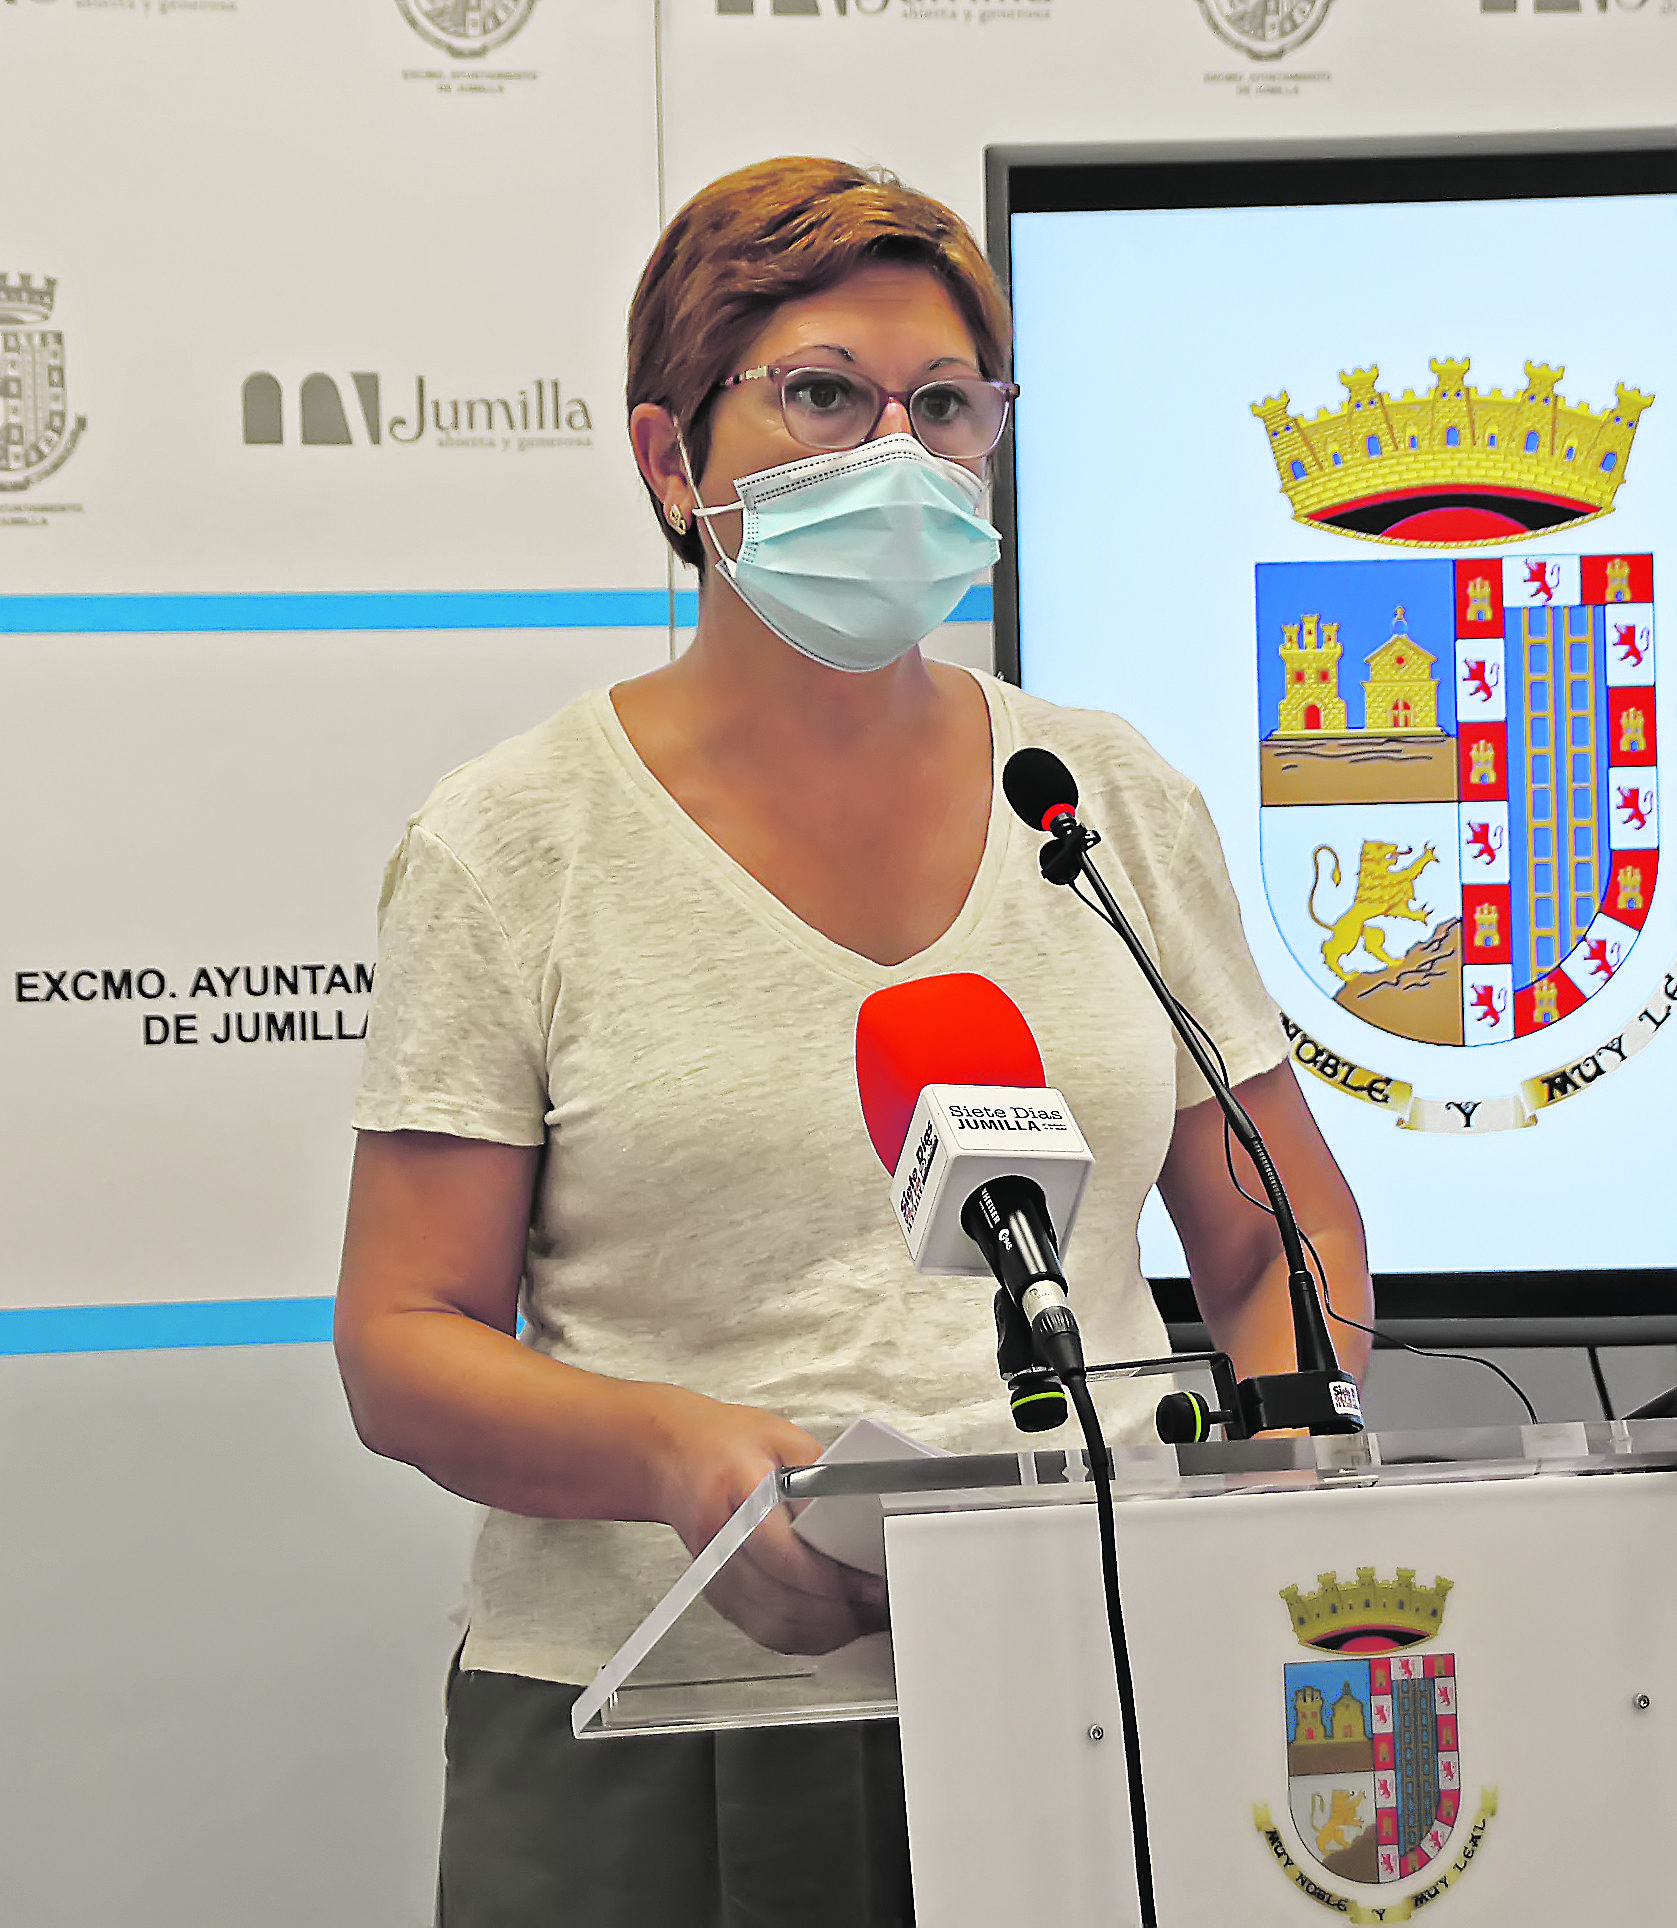 La presión hospitalaria aumenta y Jumilla tenía ayer 57 casos positivos según los datos de la alcaldesa